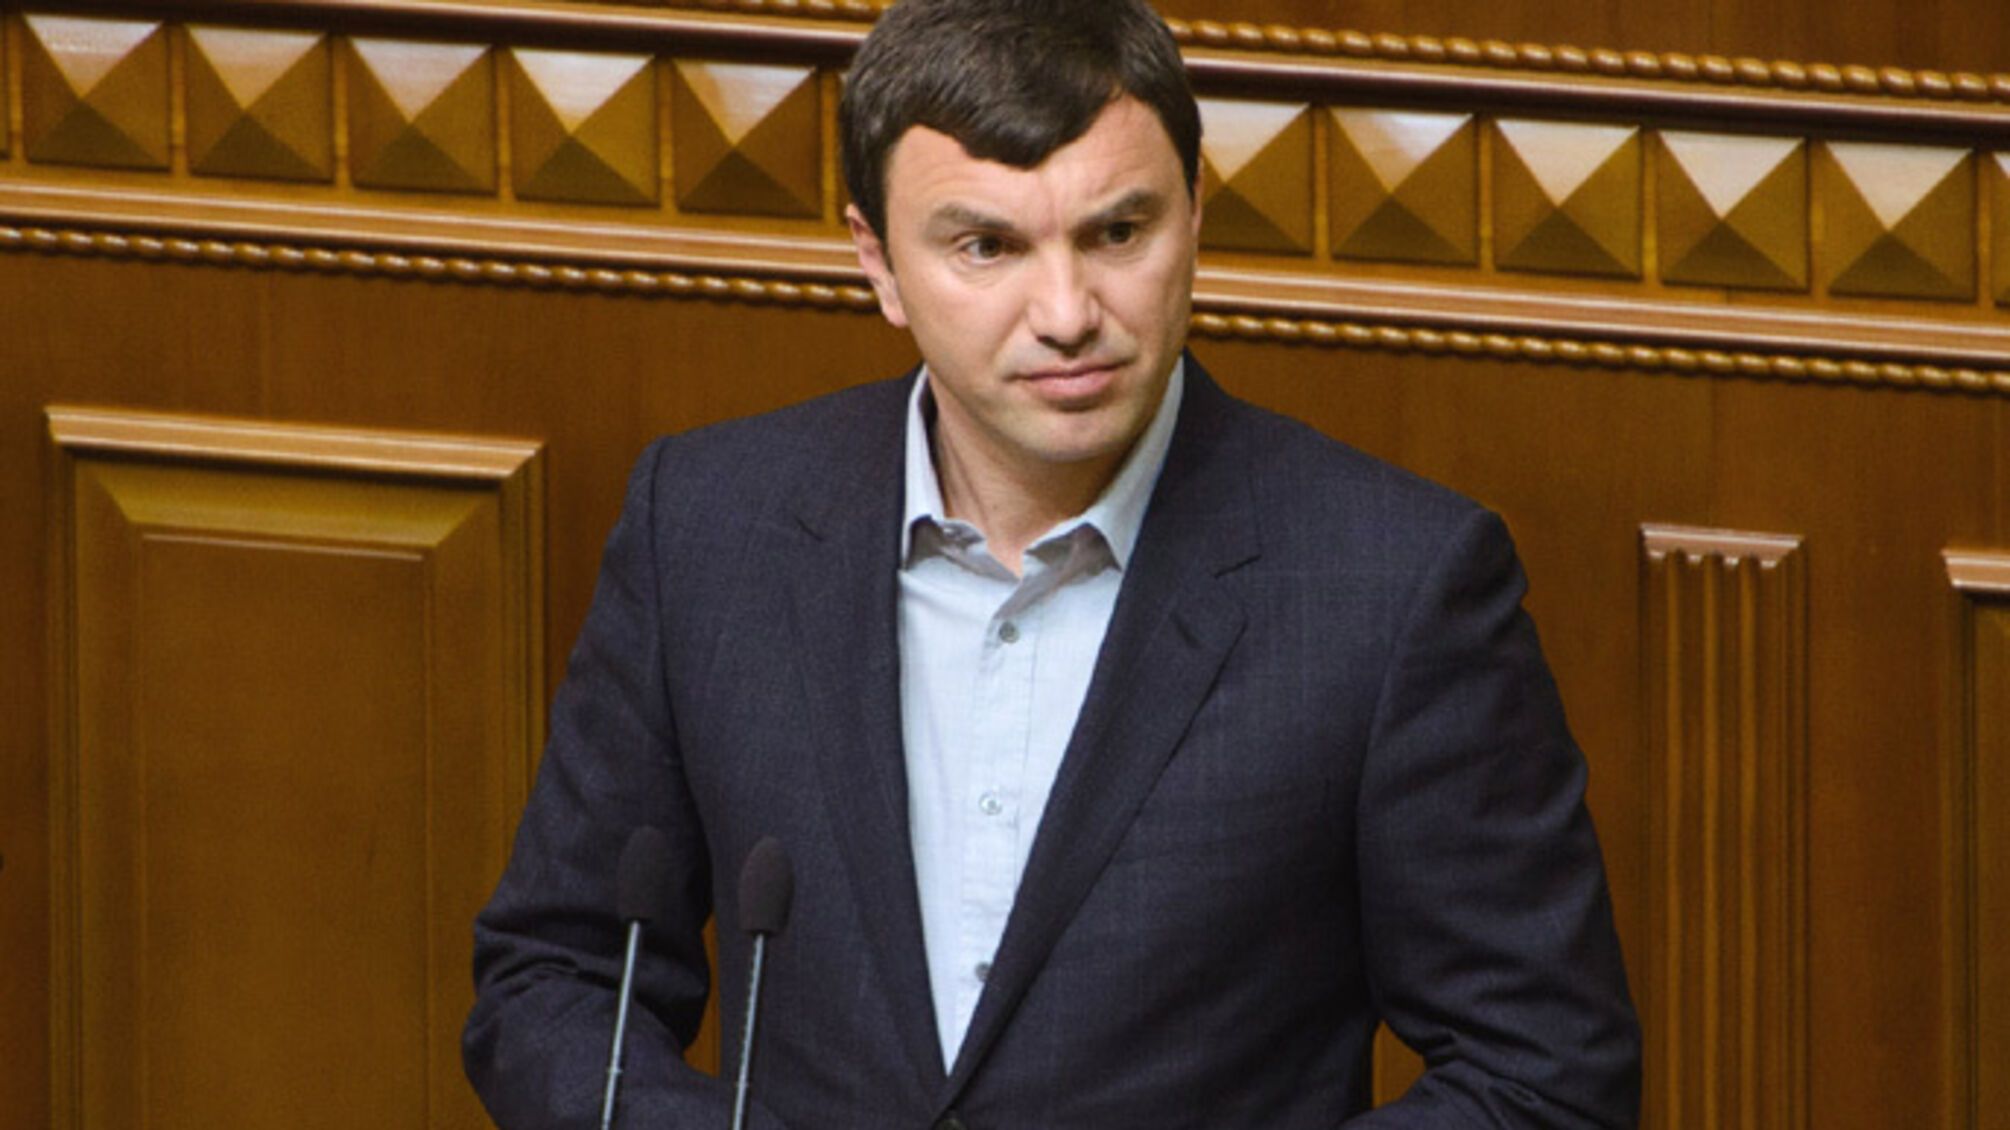 Умер народный депутат трех созывов Андрей Иванчук: что известно?